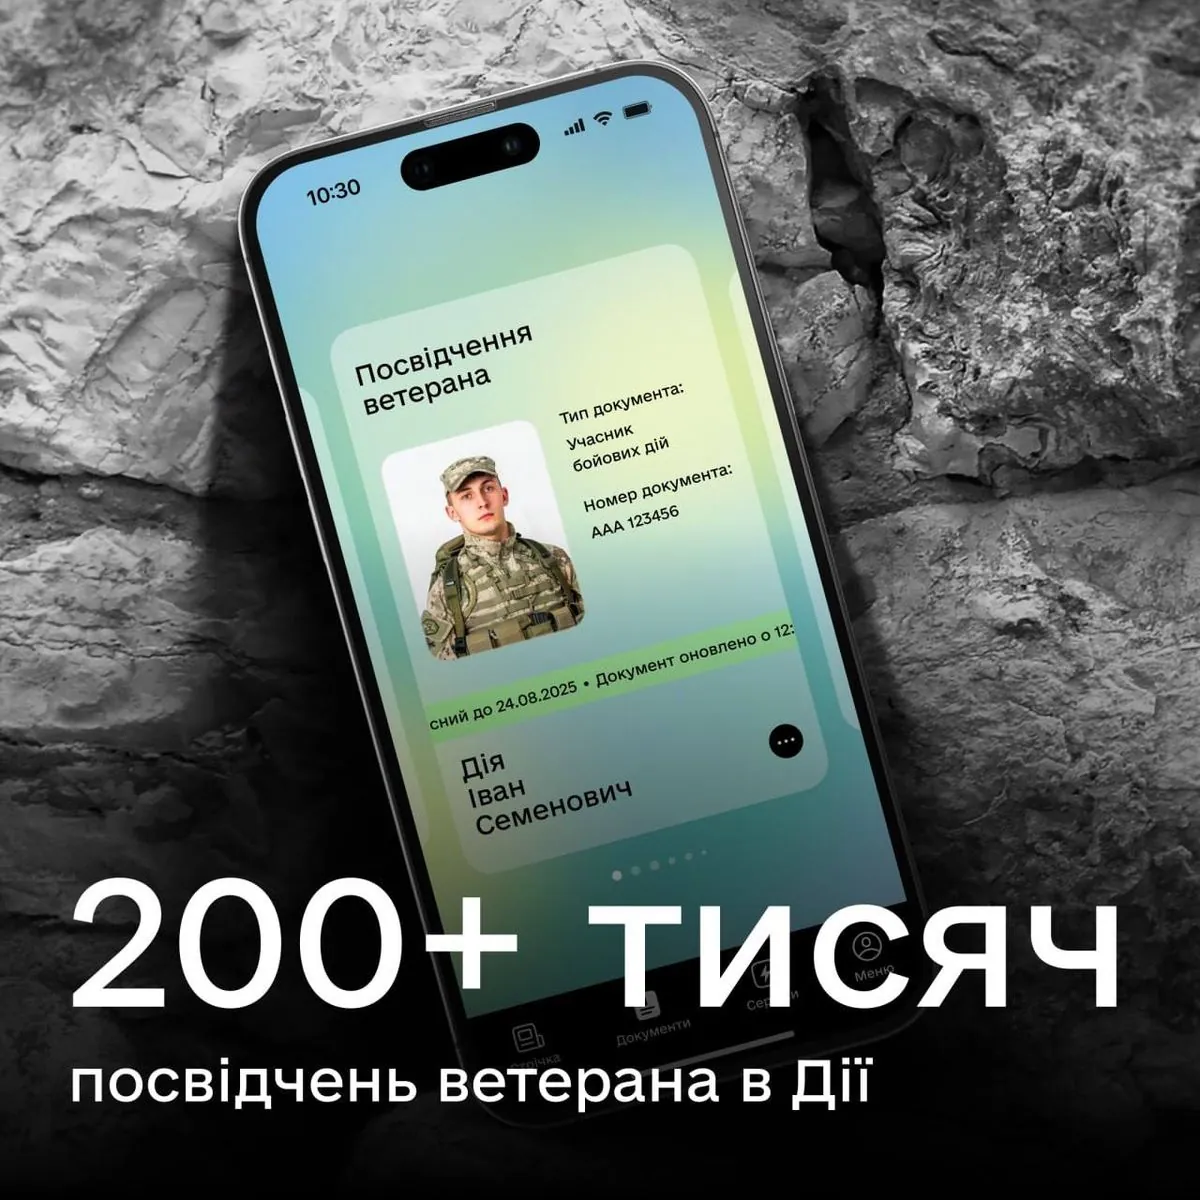 ukraintsi-sgenerirovali-200-tisyach-udostoverenii-veterana-v-dii-fedorov